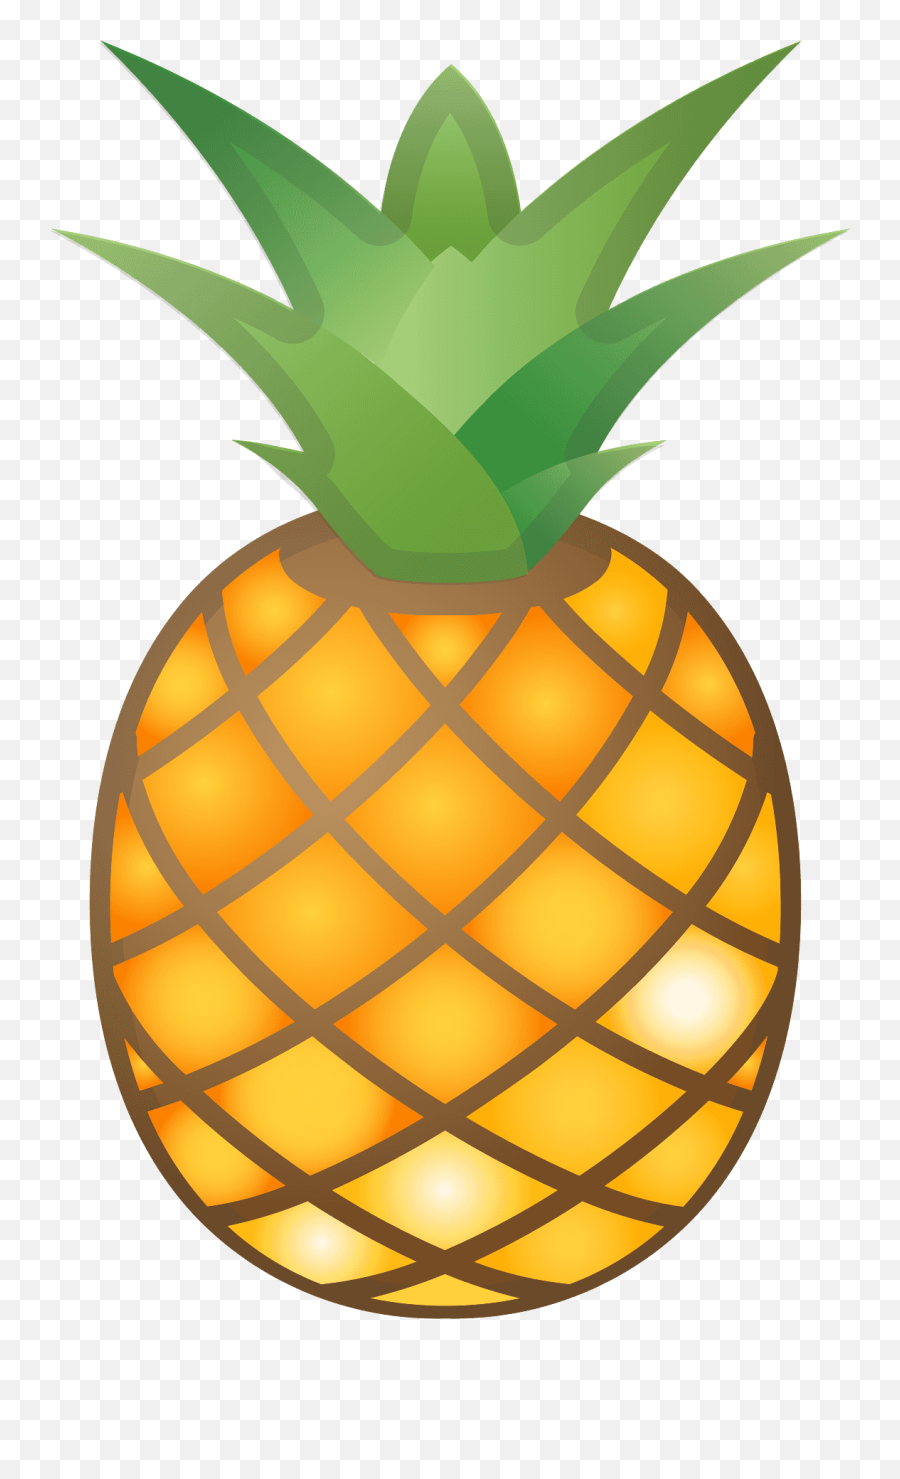 Pineapple Emoji - Dictionarycom Pineapple Emoji,Apple Logo Emoji